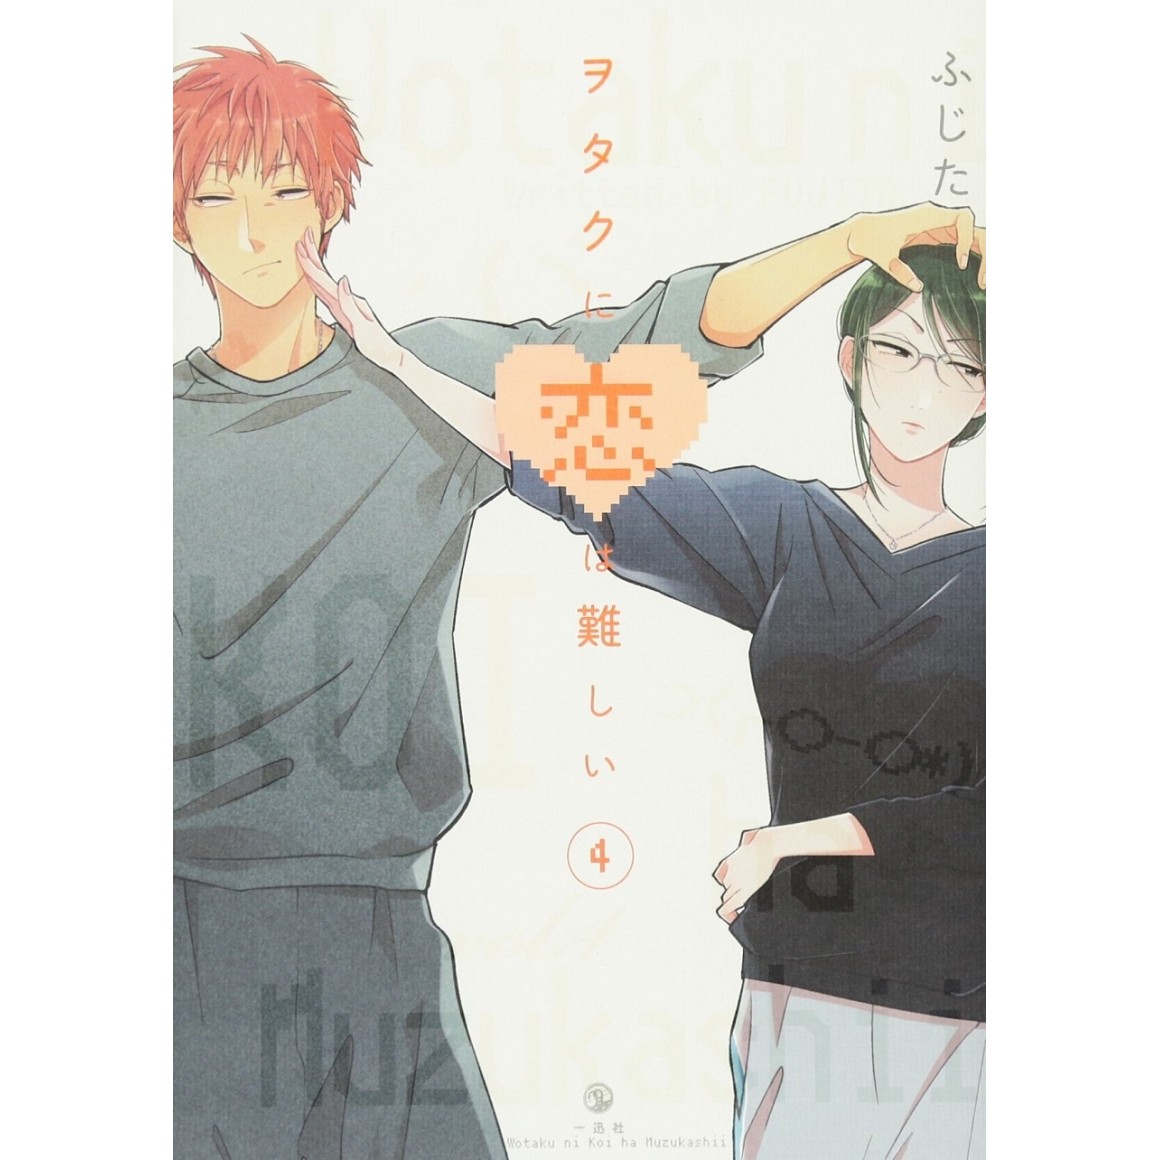 Wotaku ni Koi wa Muzukashii Vol.6 (Love Is Hard for Otaku) -  ISBN:9784758009874